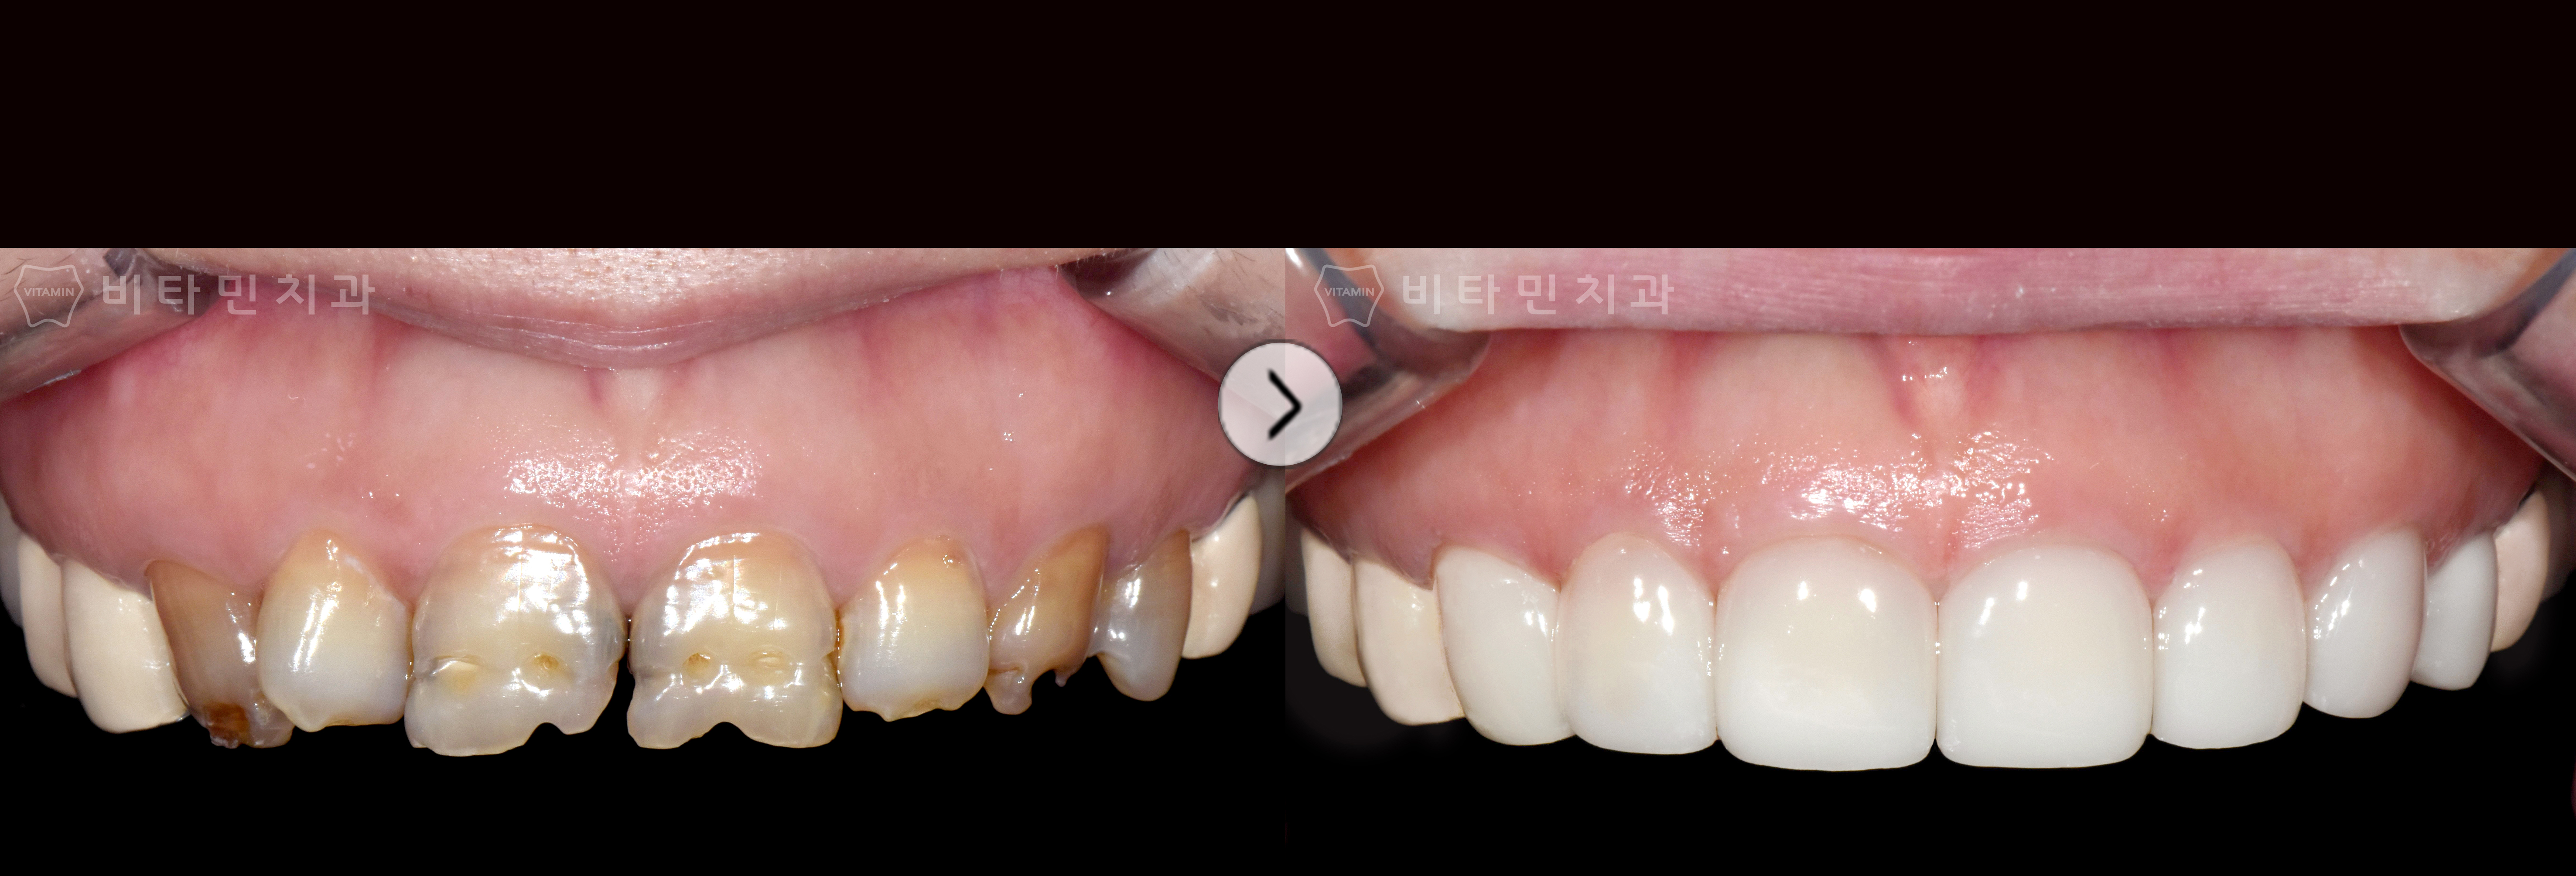 전체적으로 심한 손상과 착색된 치아를 가지런하고 예쁜 치아로 개선